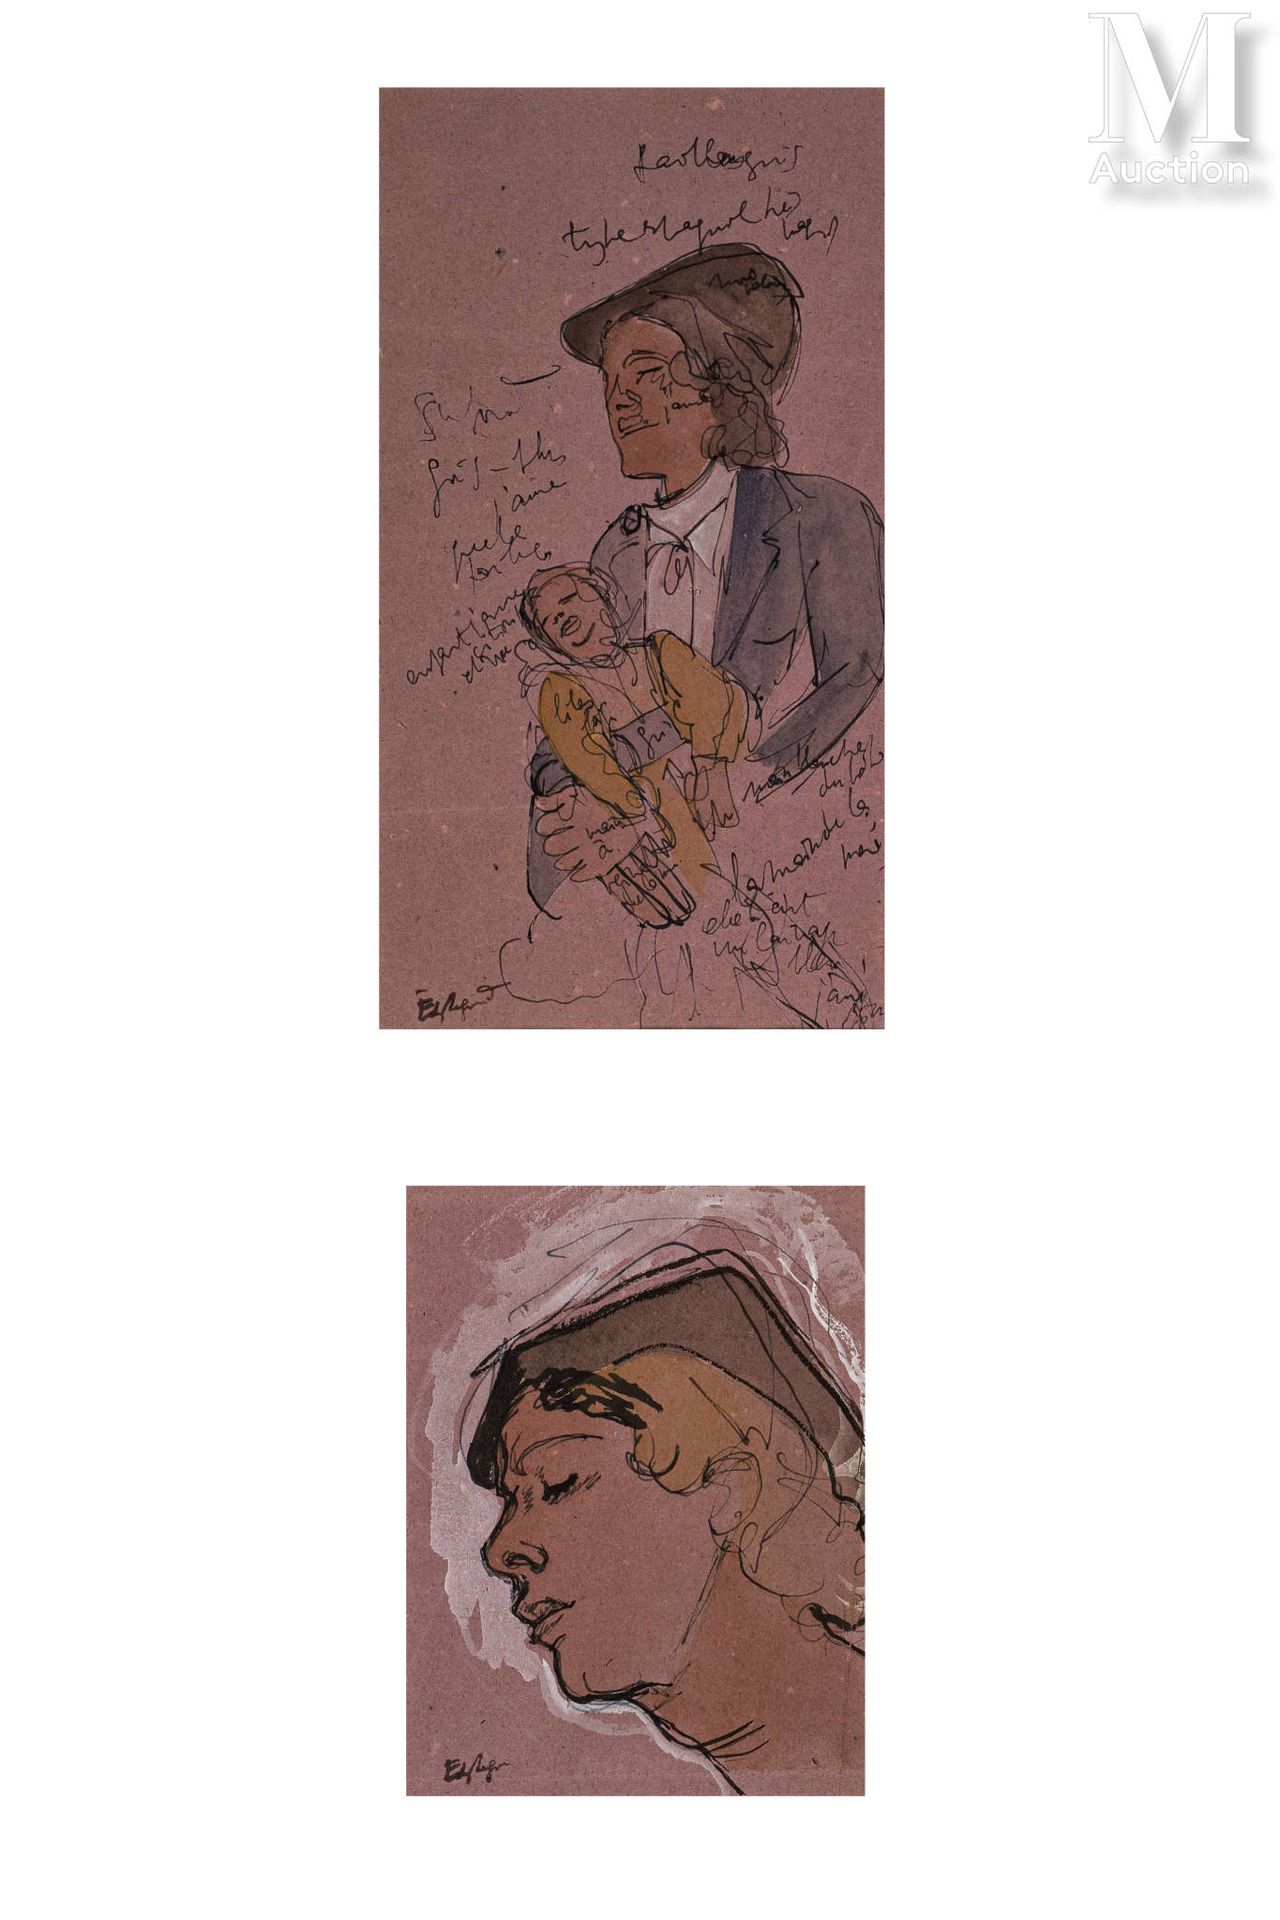 EDY LEGRAND (Bordeaux 1892-Bonnieux 1970) Ducks

Gouache on paper 

25 x 31cm

S&hellip;